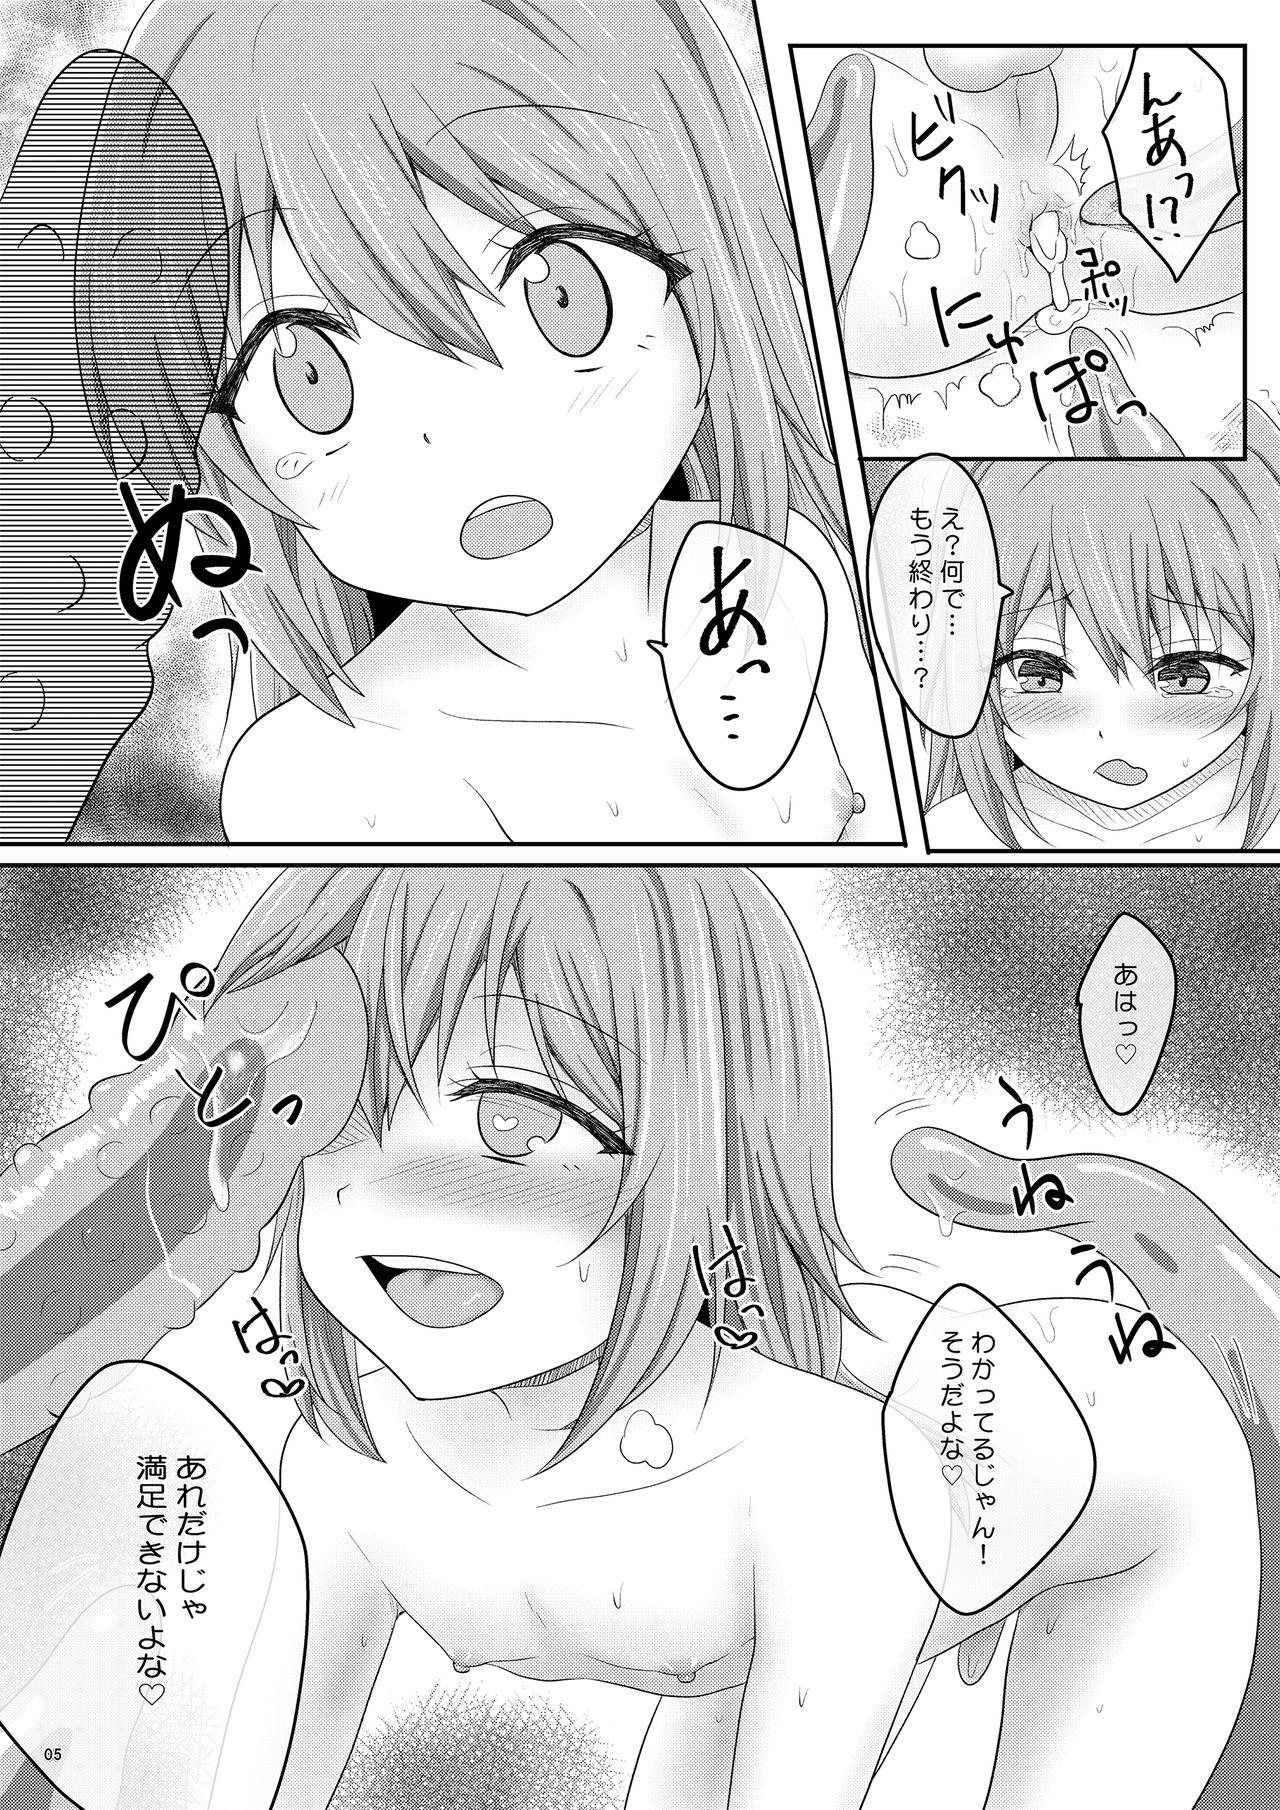 Wanking Ero Manga de Mita You na Shokushu H ga Shite Mitai - Tensei shitara slime datta ken Bunda Grande - Page 5